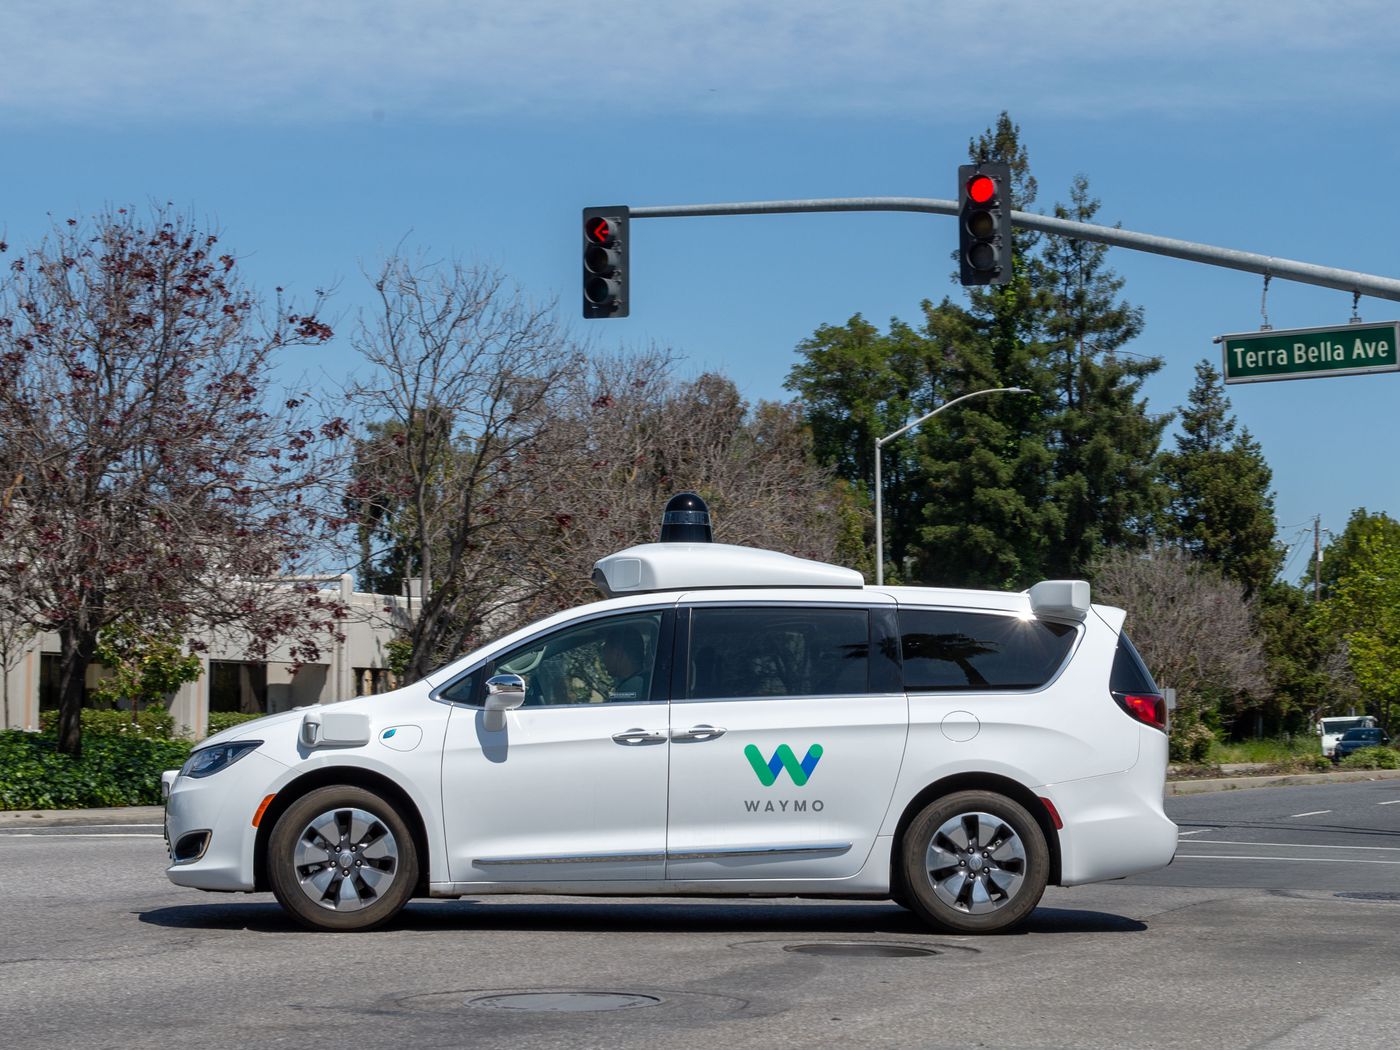 Waymo、Uber等公司暂停加州的自动驾驶测试